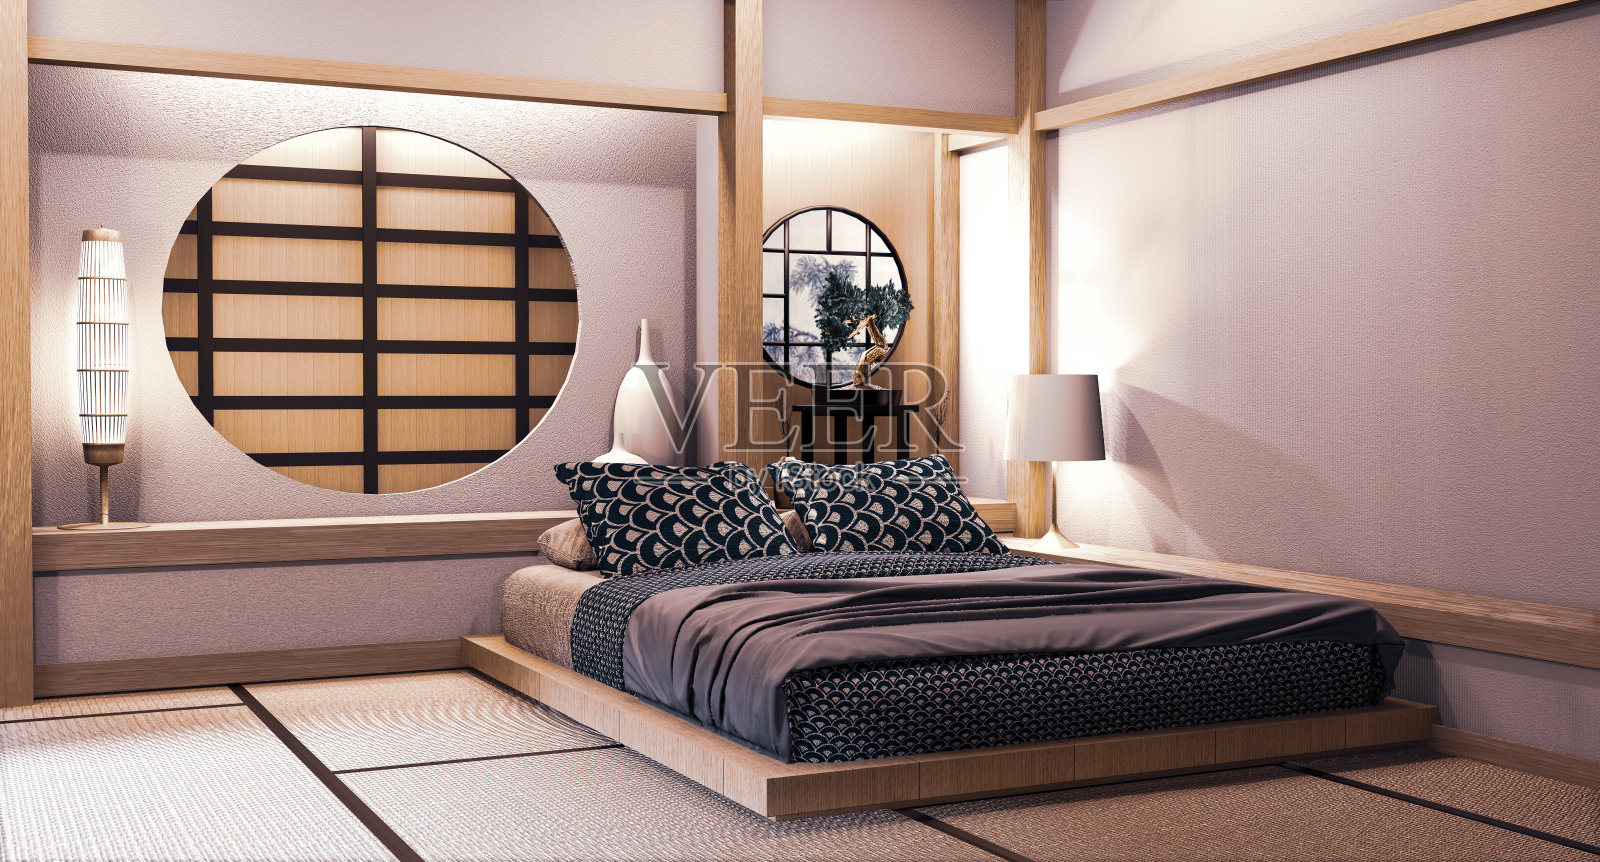 卧室上的圆窗日式墙设计日式风格。三维渲染照片摄影图片